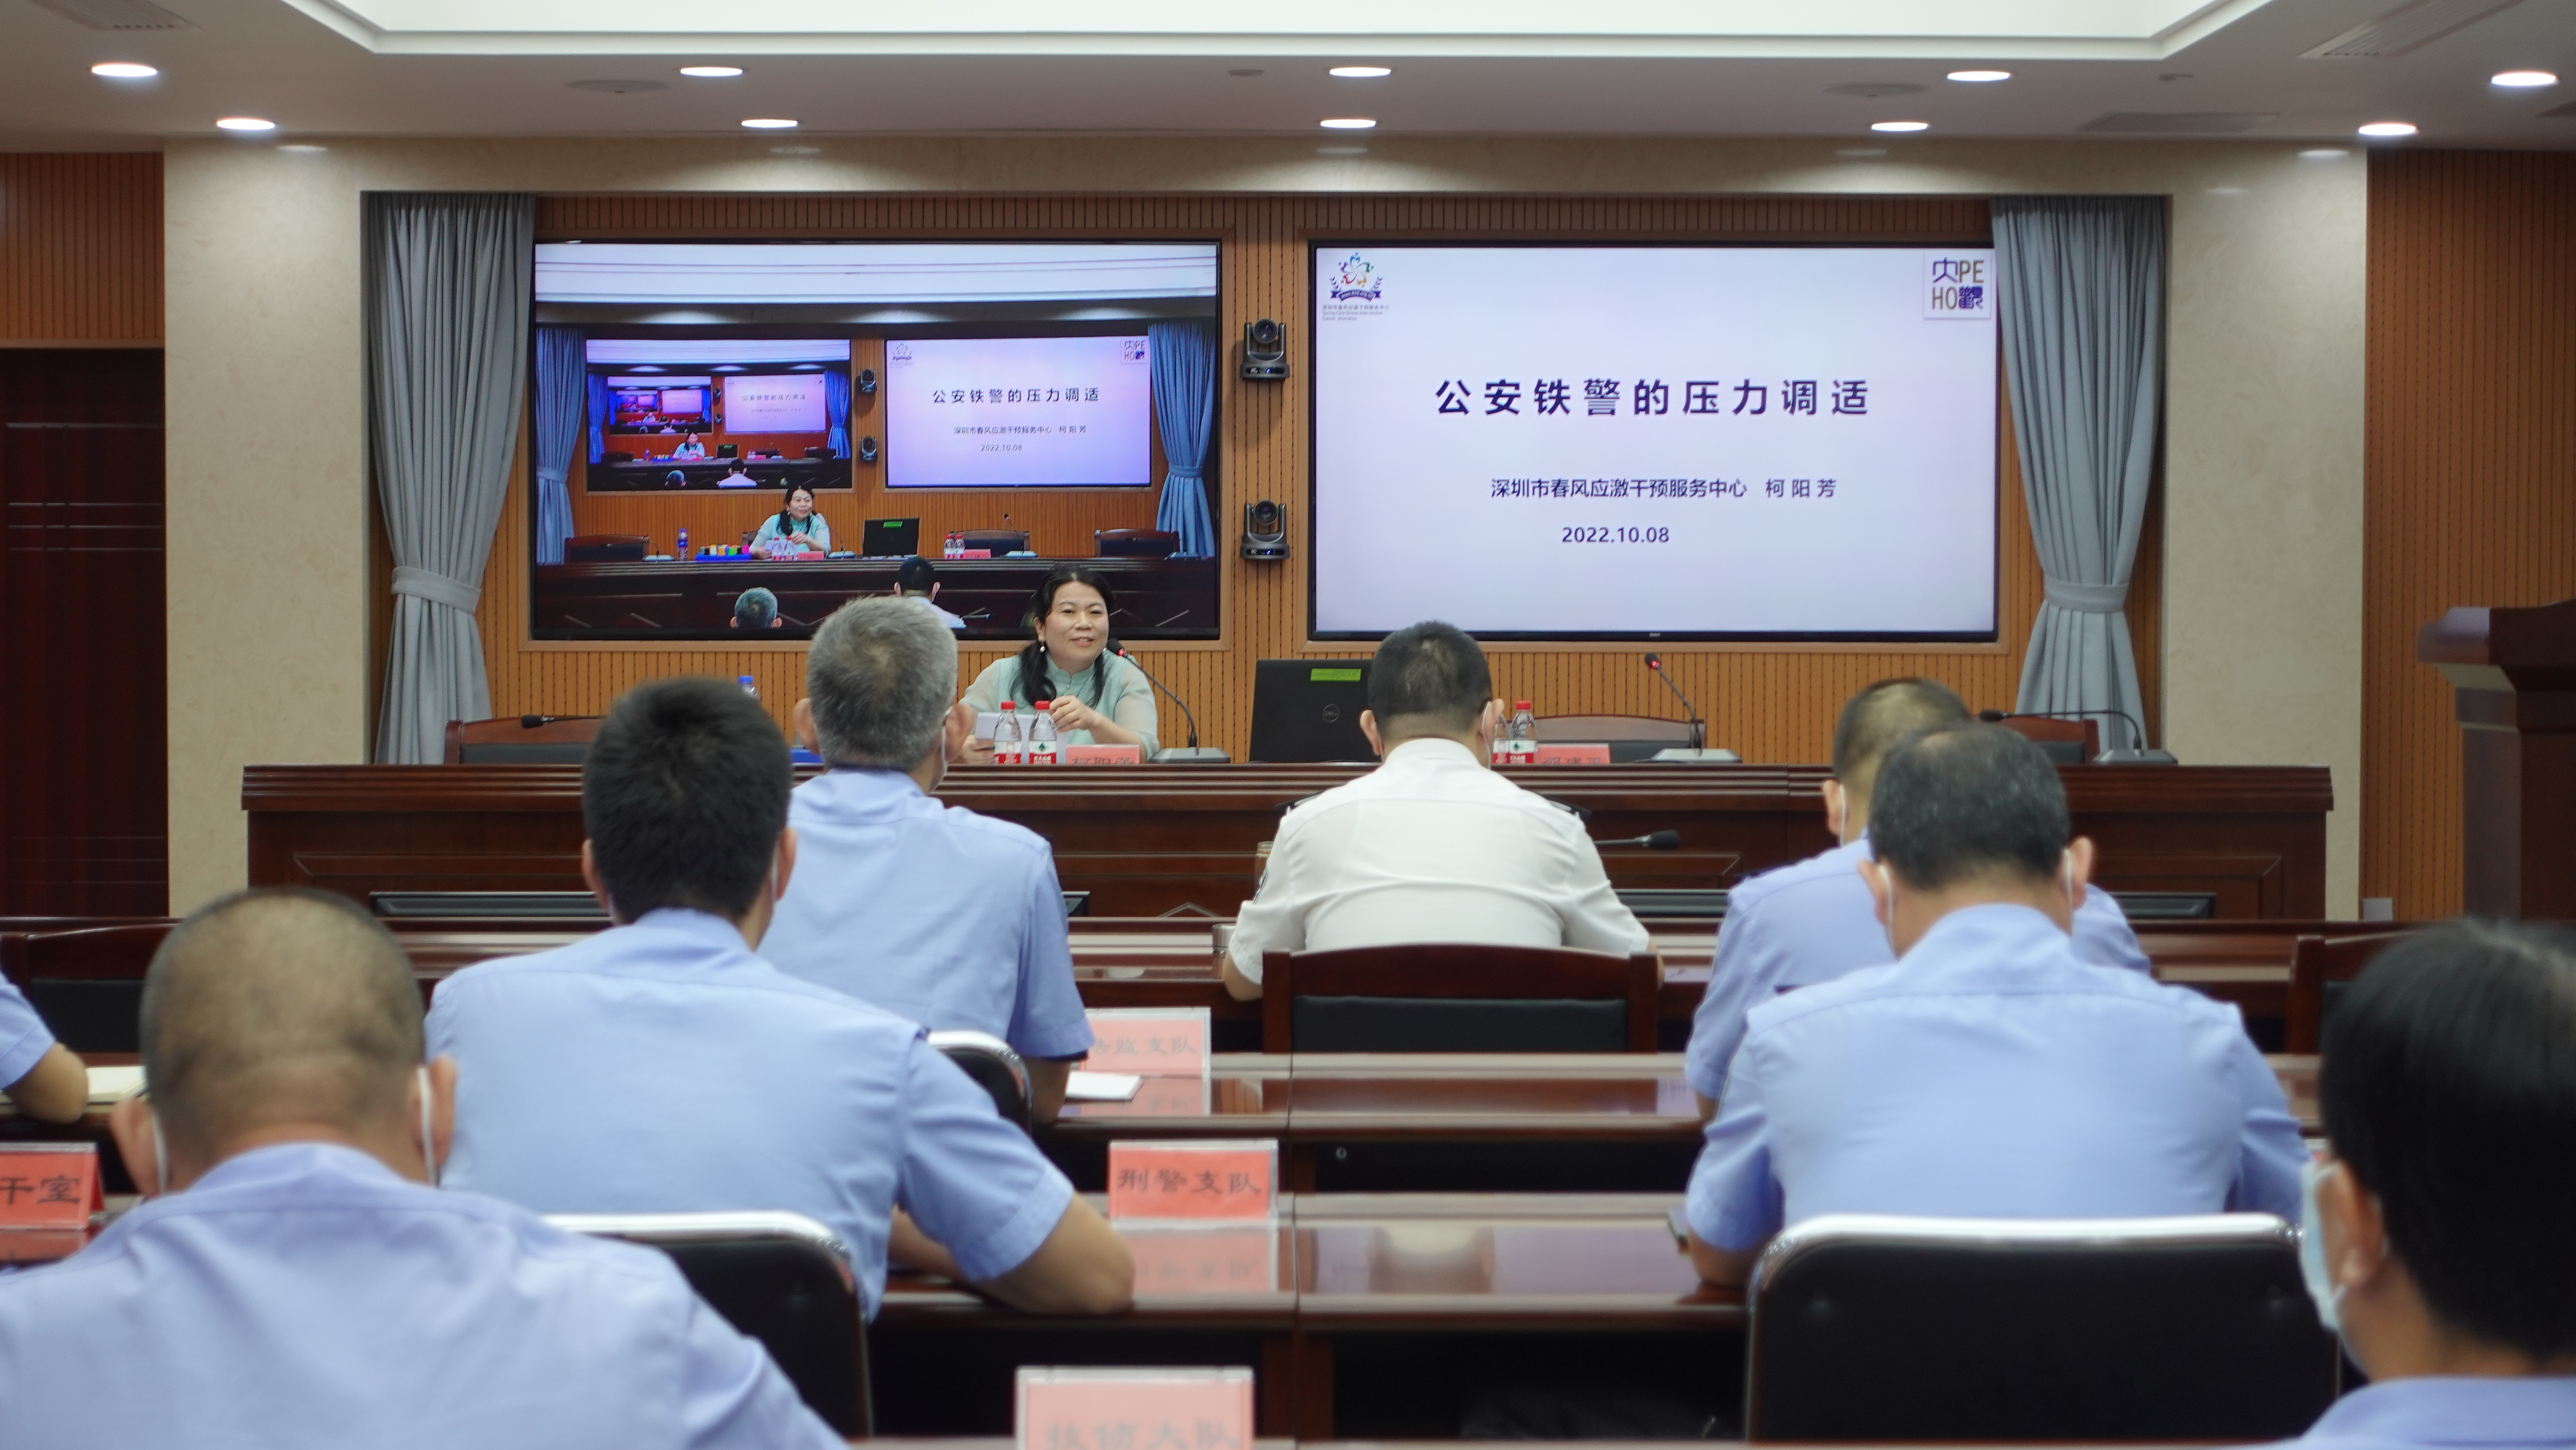 深圳铁路公安处举办心理健康教育讲座 